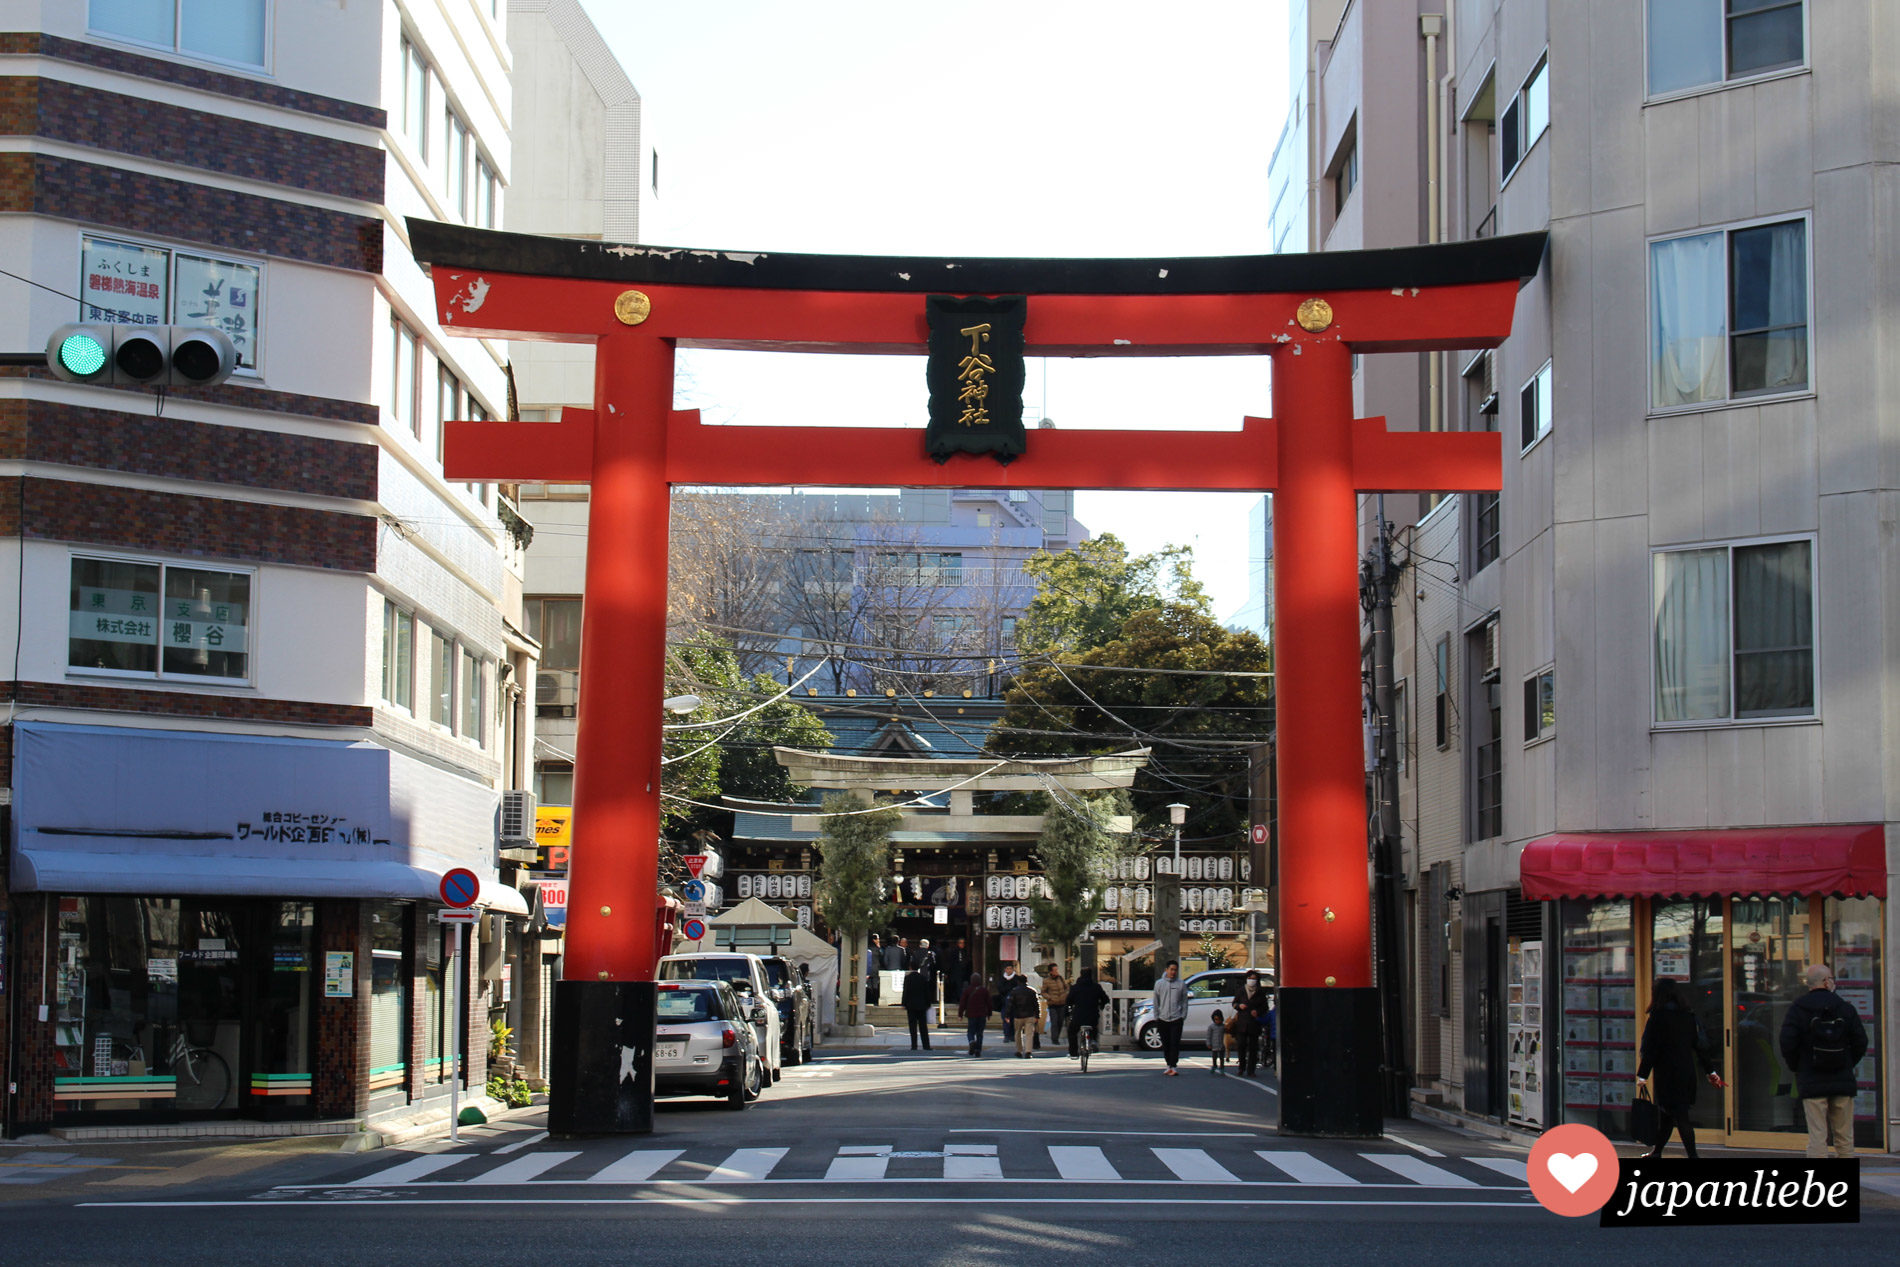 Das Torii des Shitaya Schreins mitten im Stadtteil Ueno in Tokio.